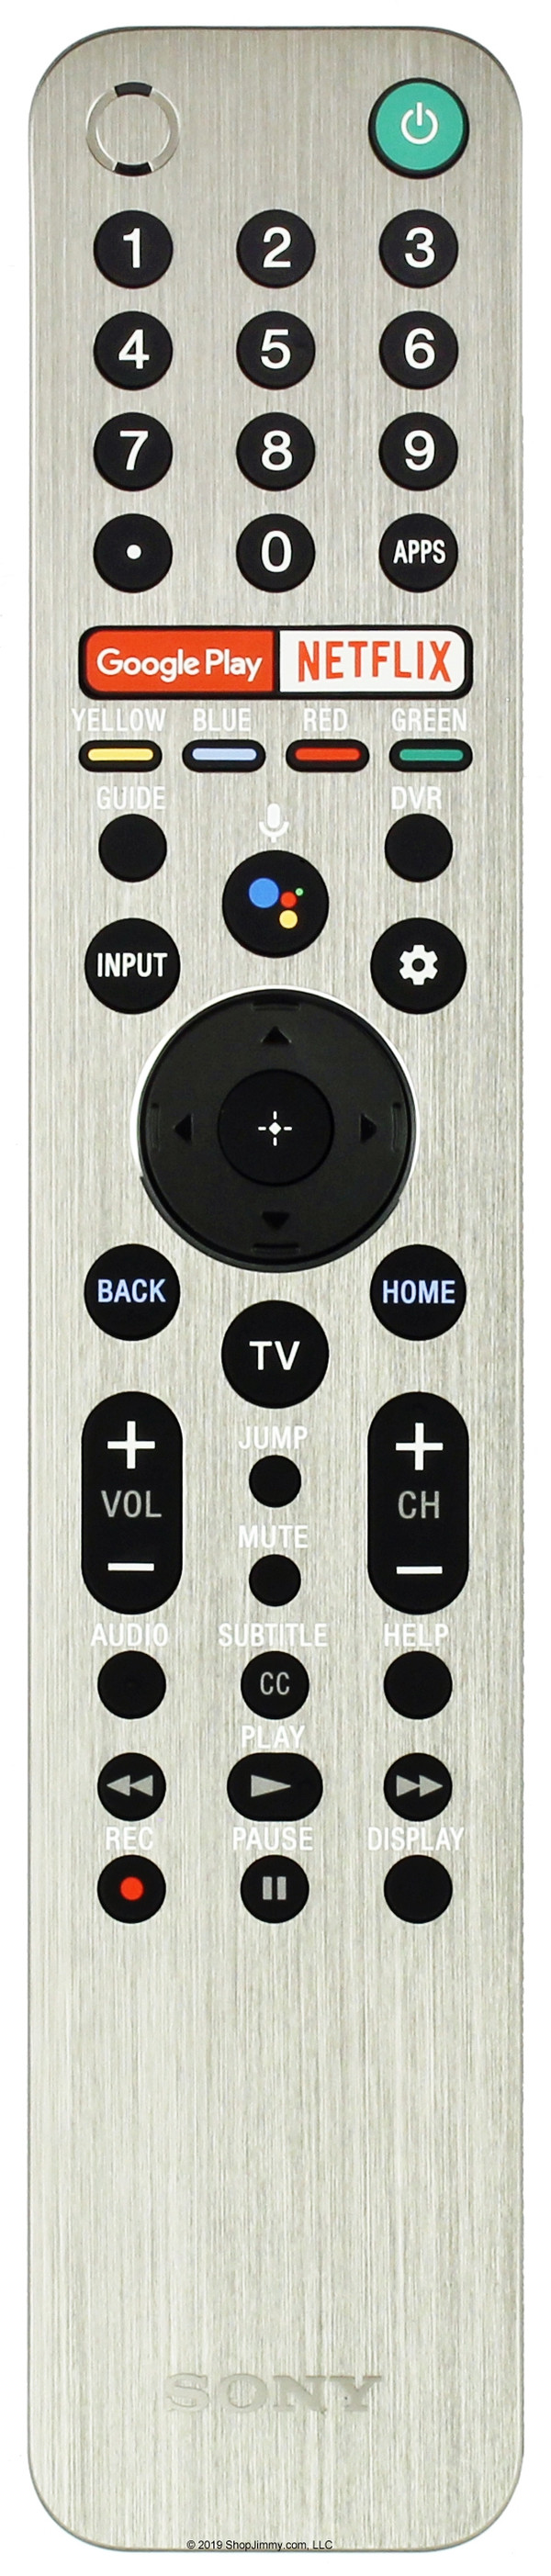 Sony 1-493-546-12 (RMF-TX600U) Remote Control - New